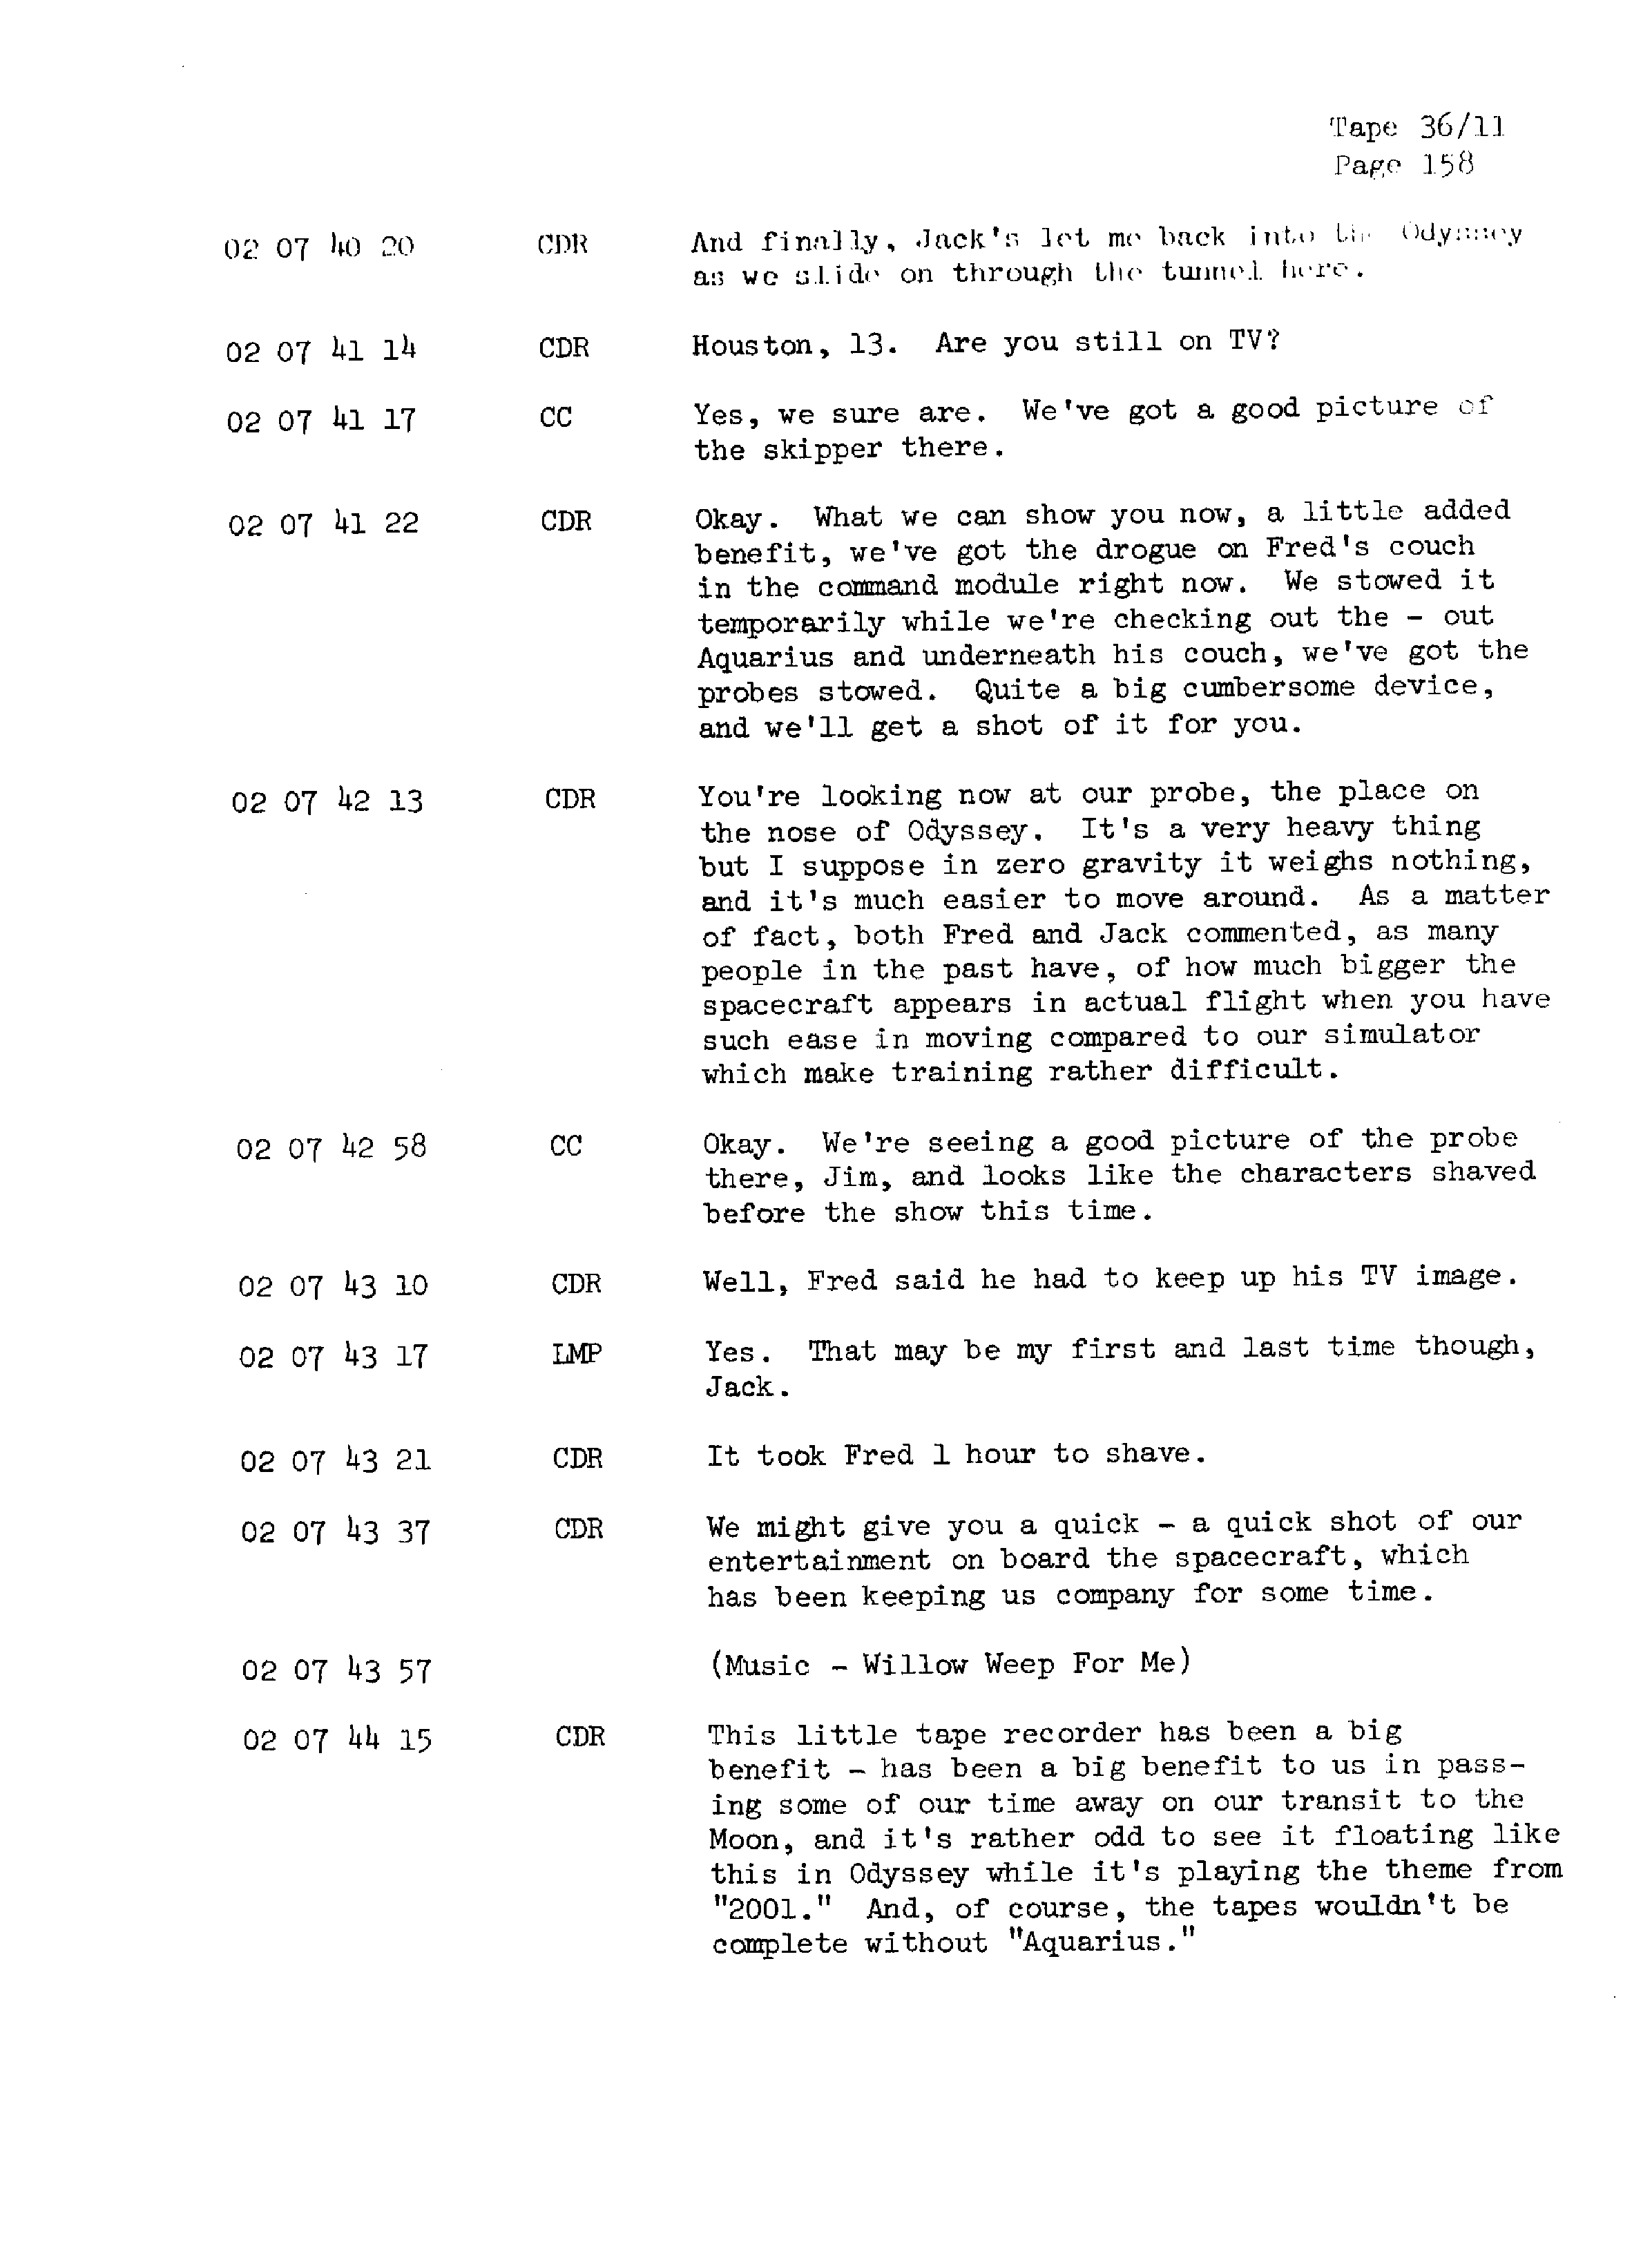 Page 165 of Apollo 13’s original transcript